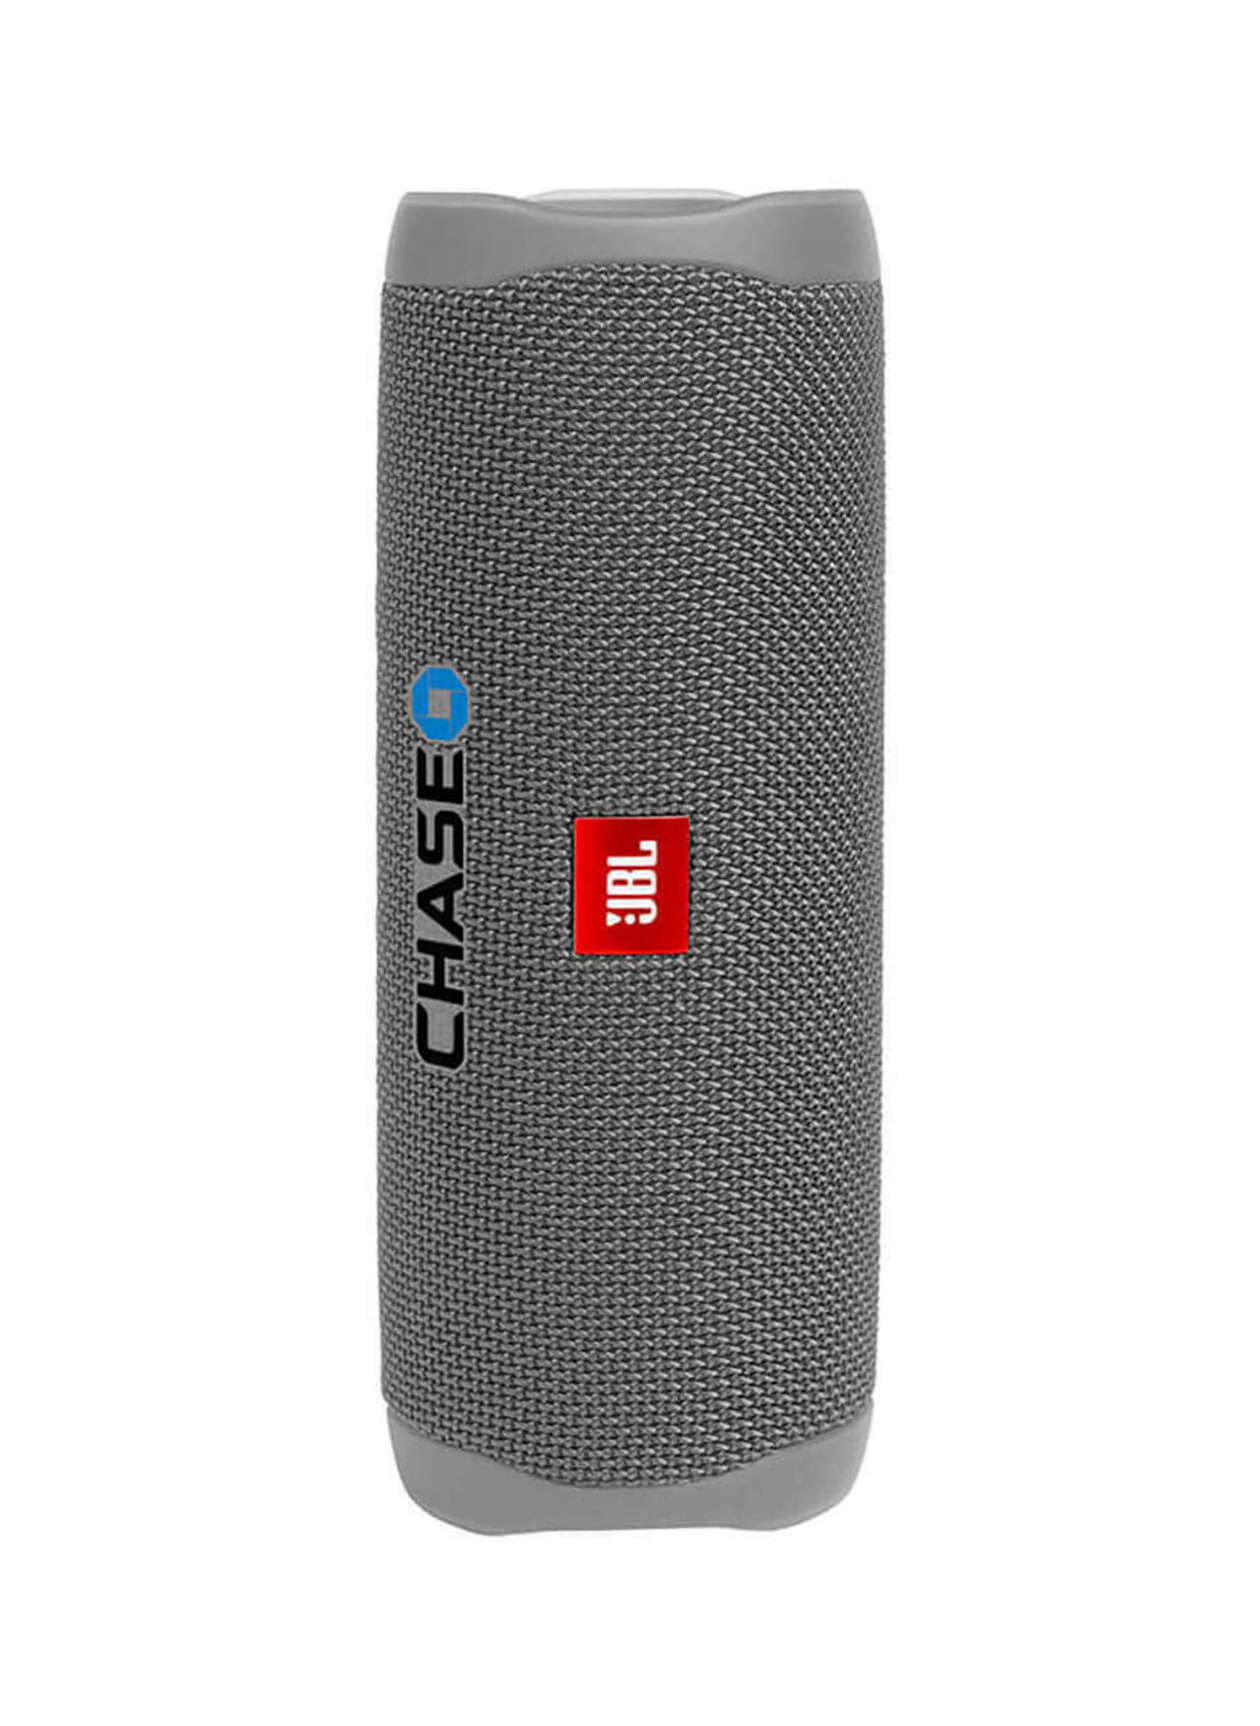 Buy JBL Bluetooth Speakers, Portable & Waterproof